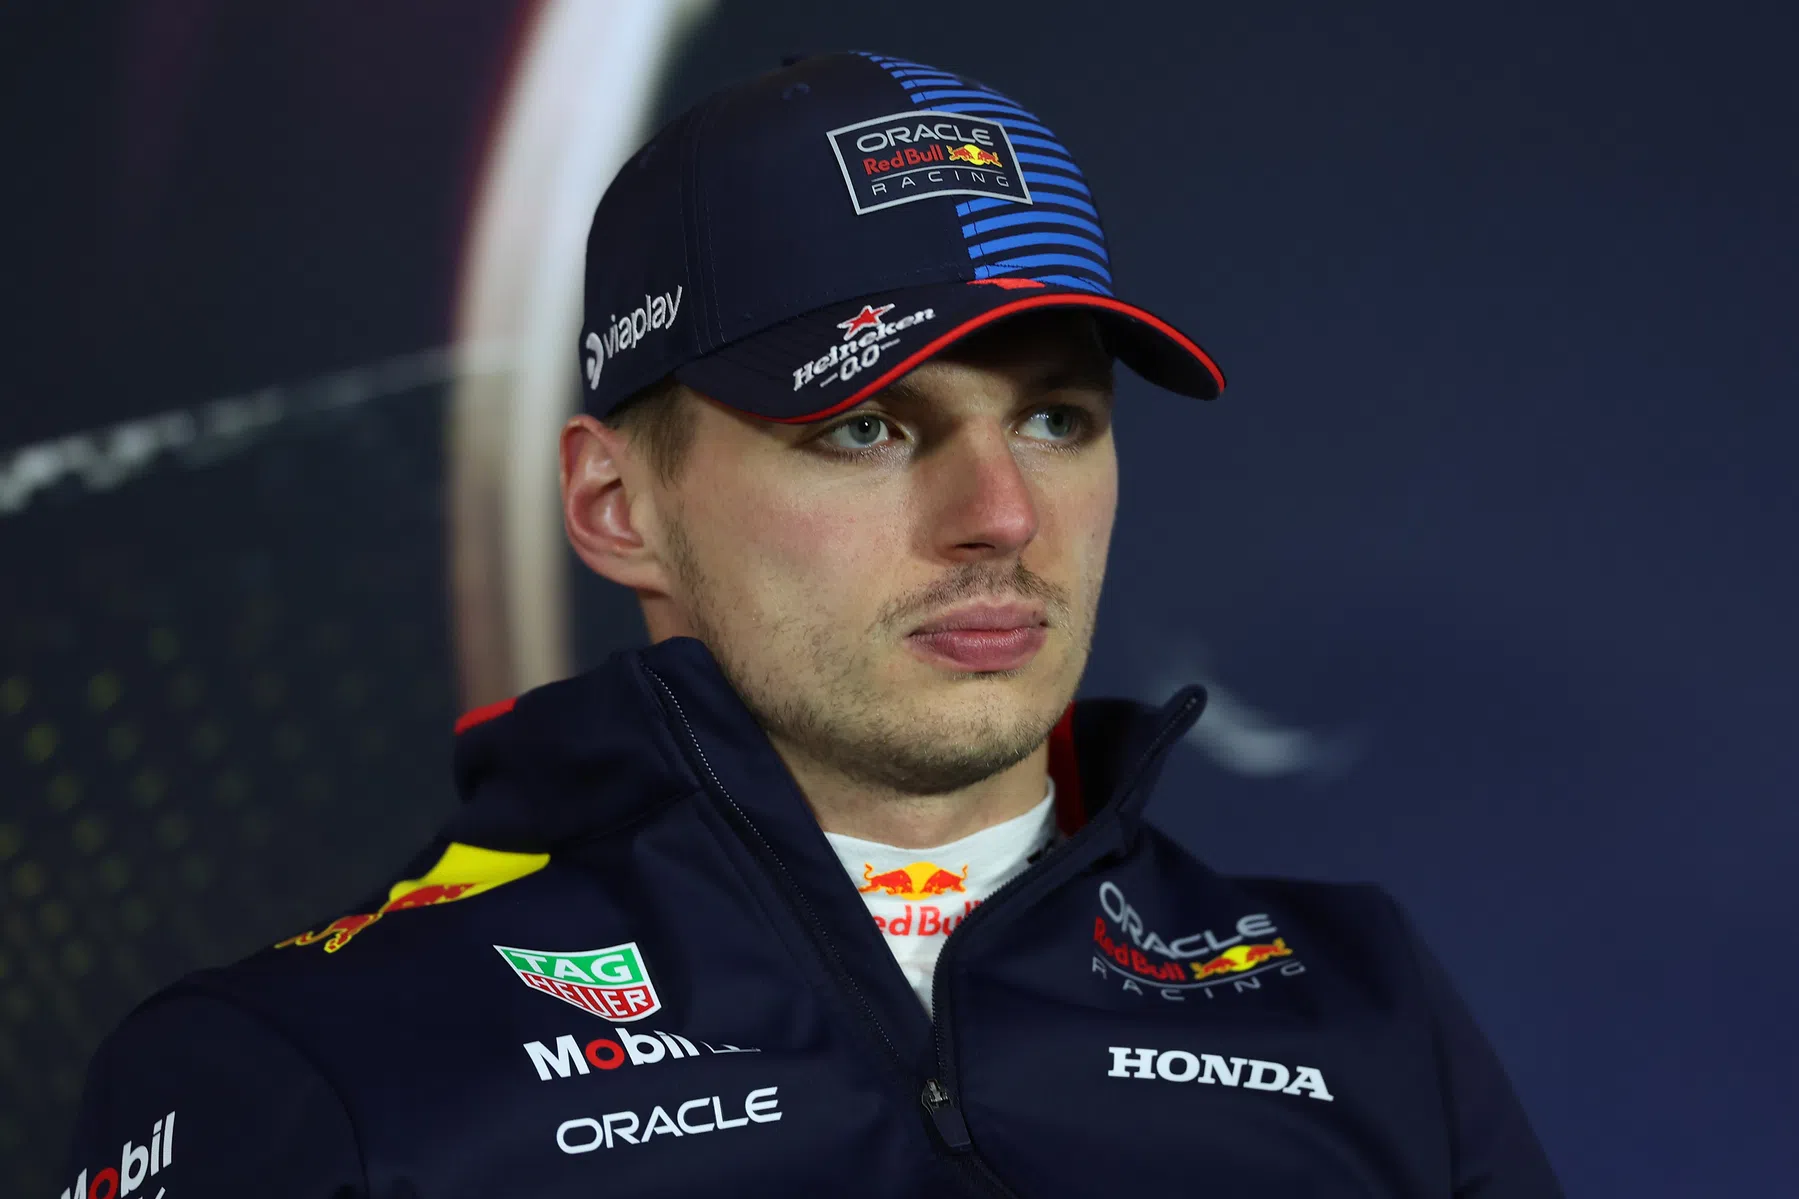 Jos Verstappen on whether Max Verstappen will leave Red Bull